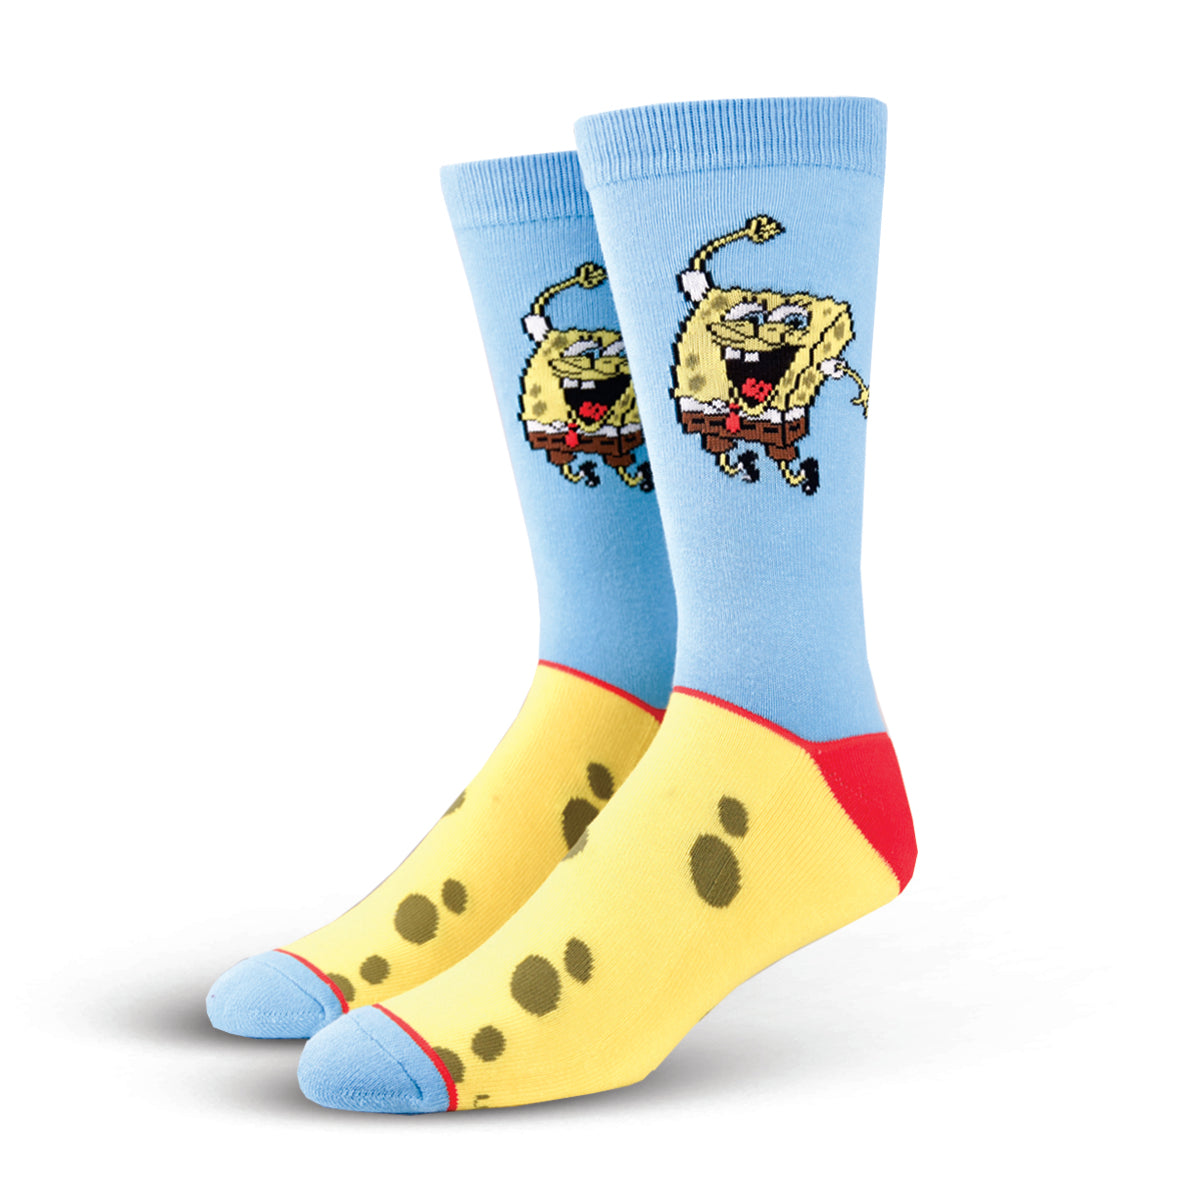 Spongebob Happy Pants